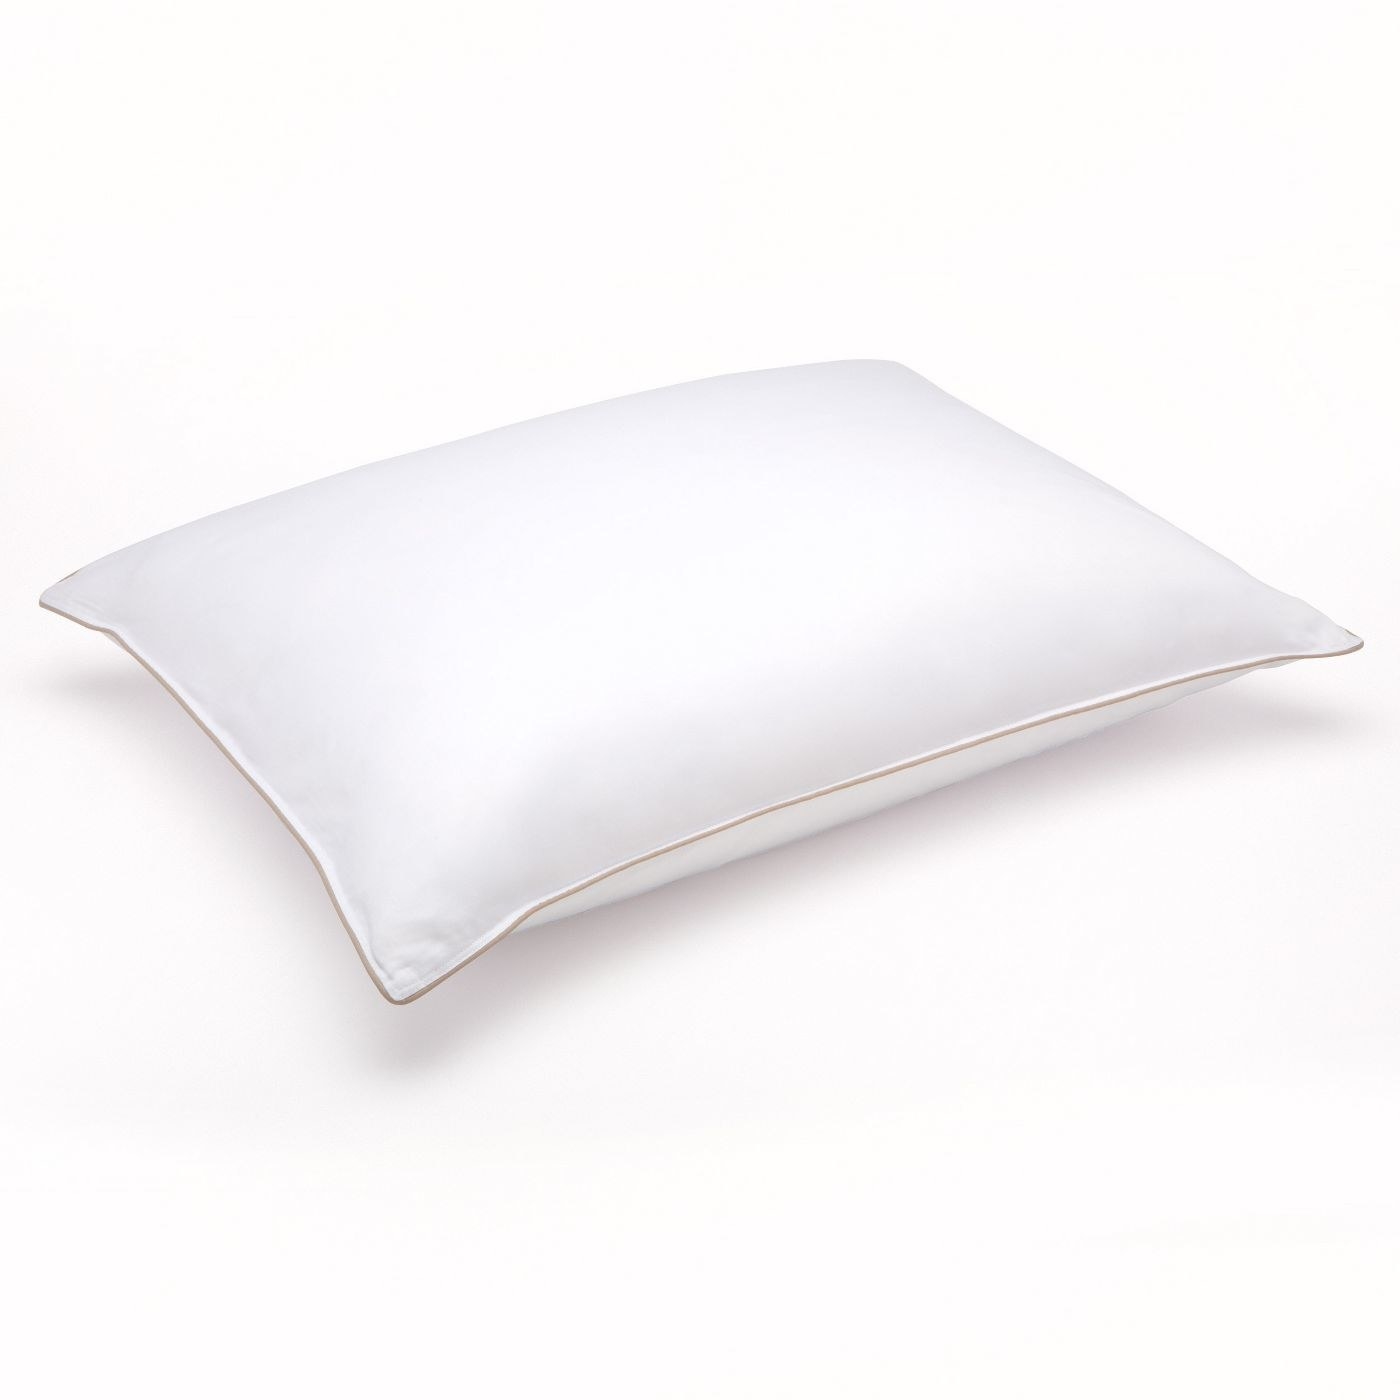 the white pillow